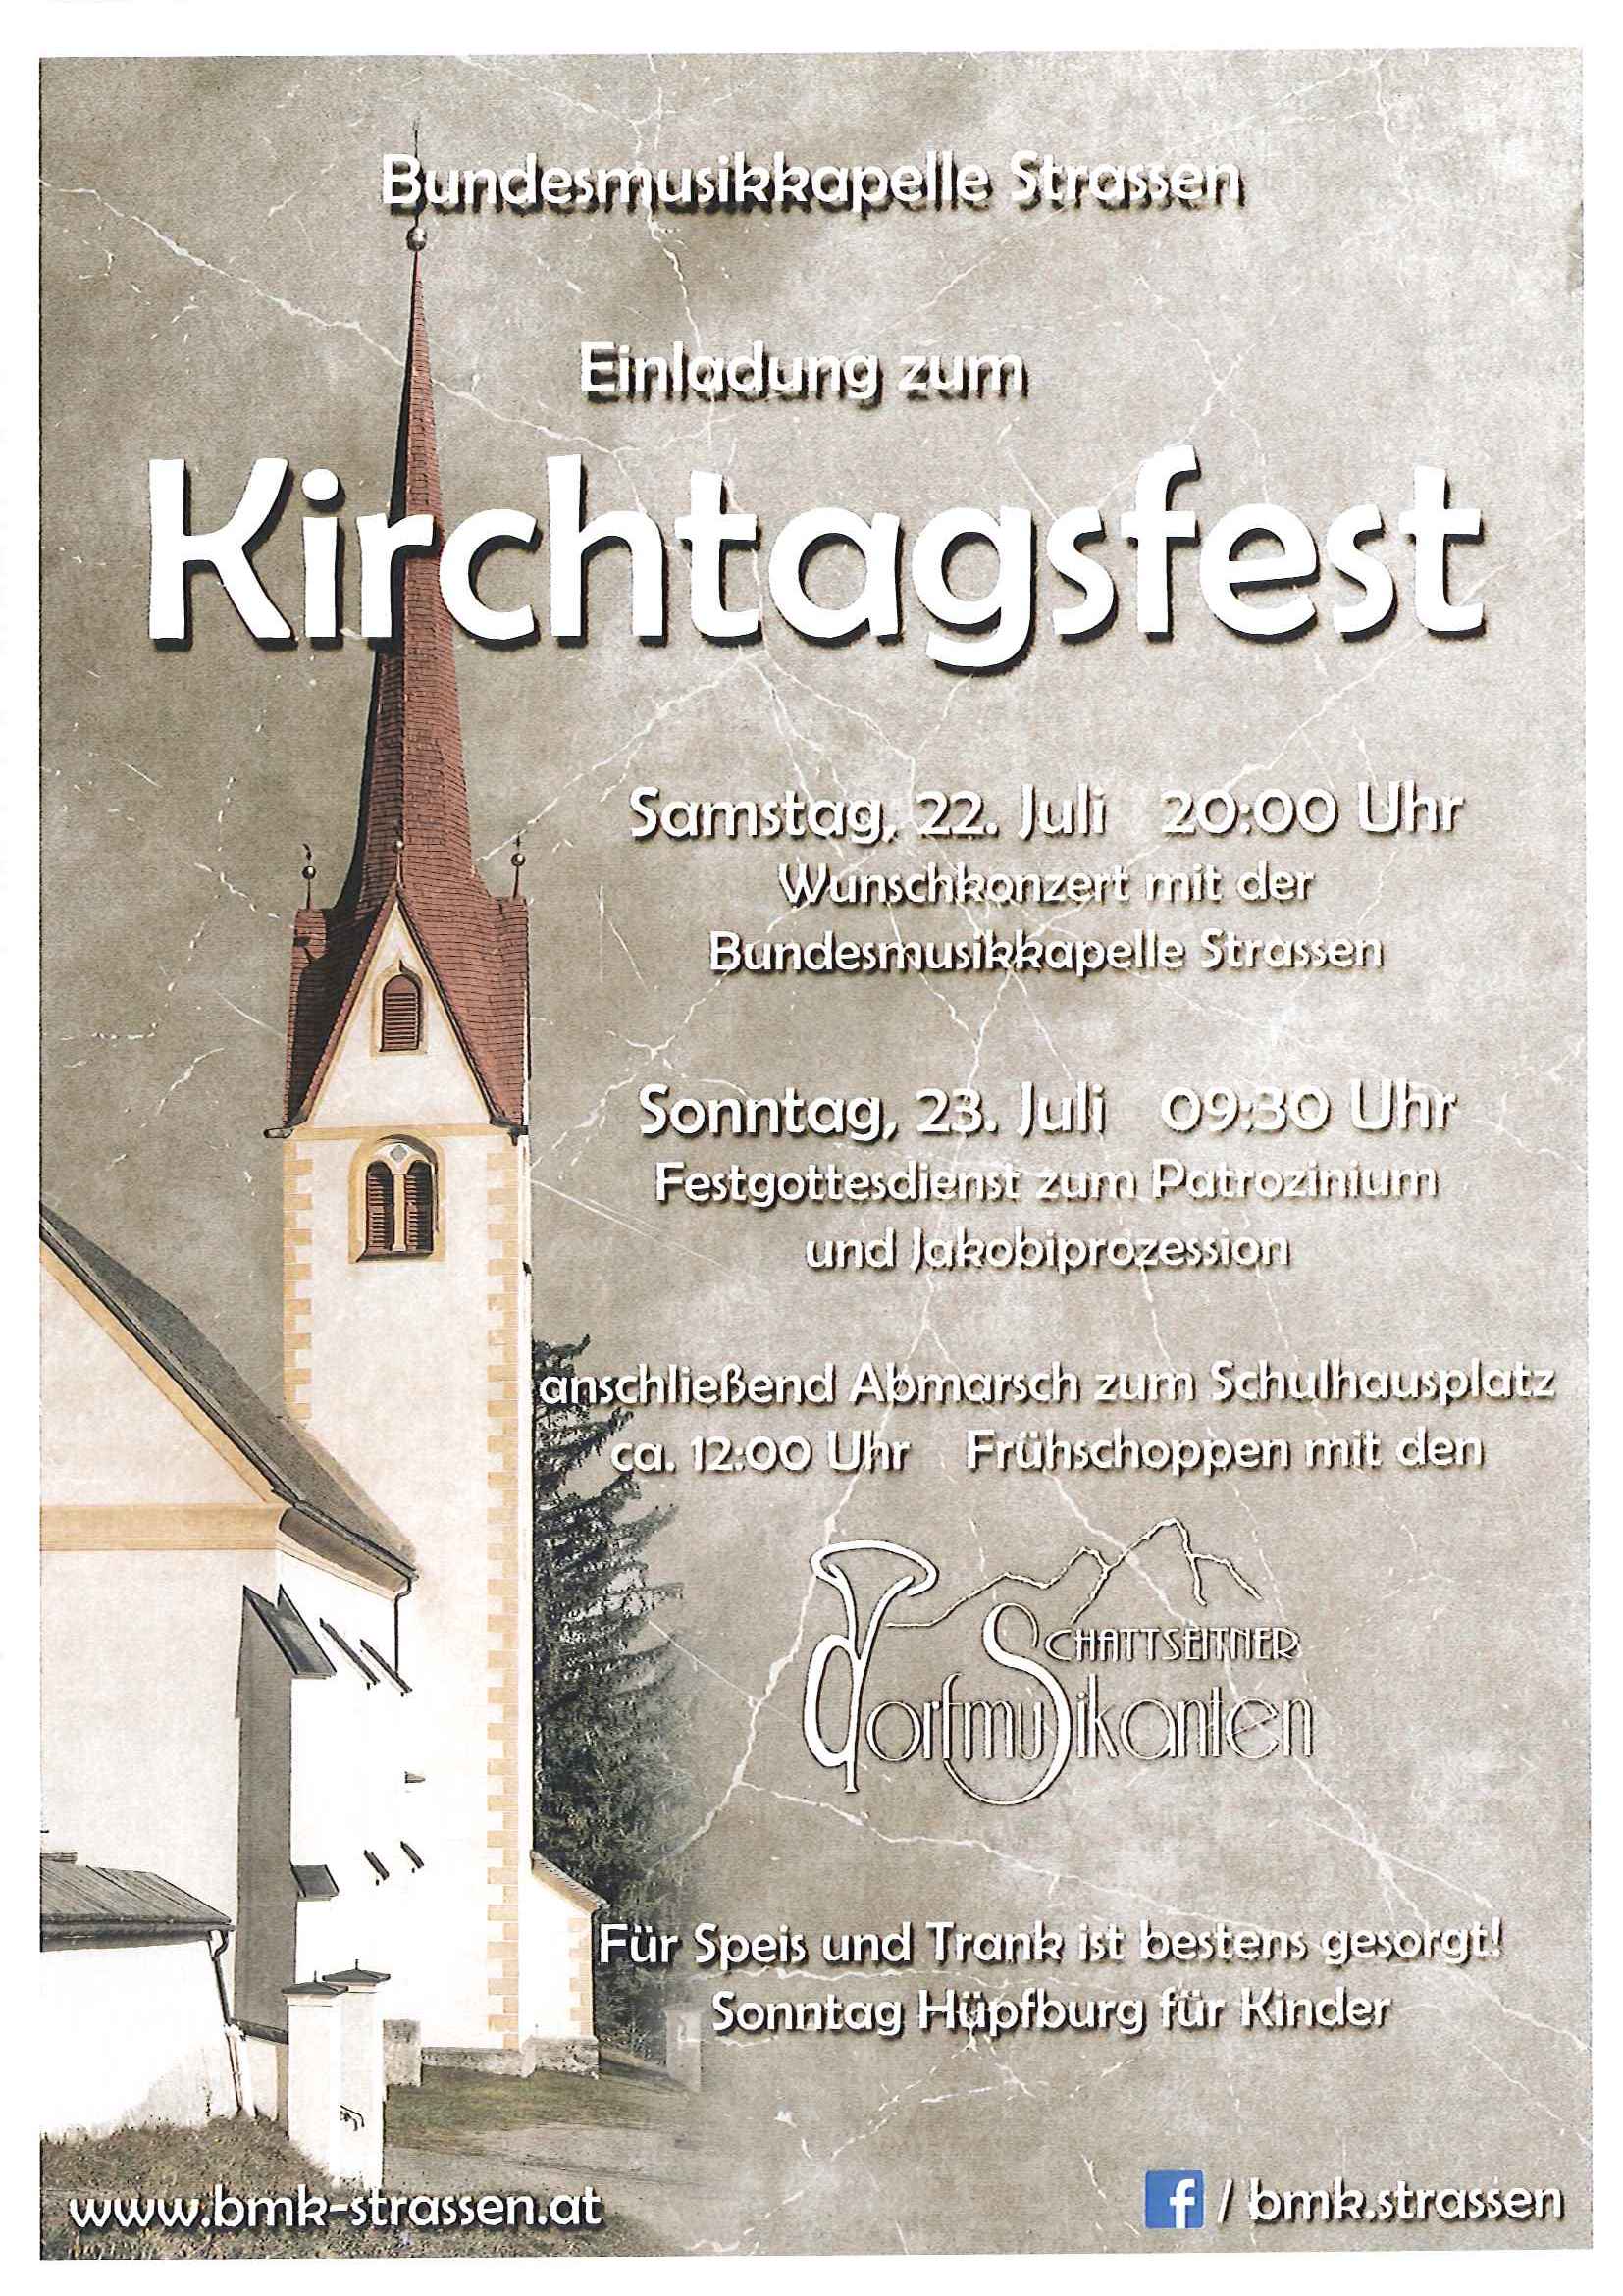 Kirchtagsfest 2017